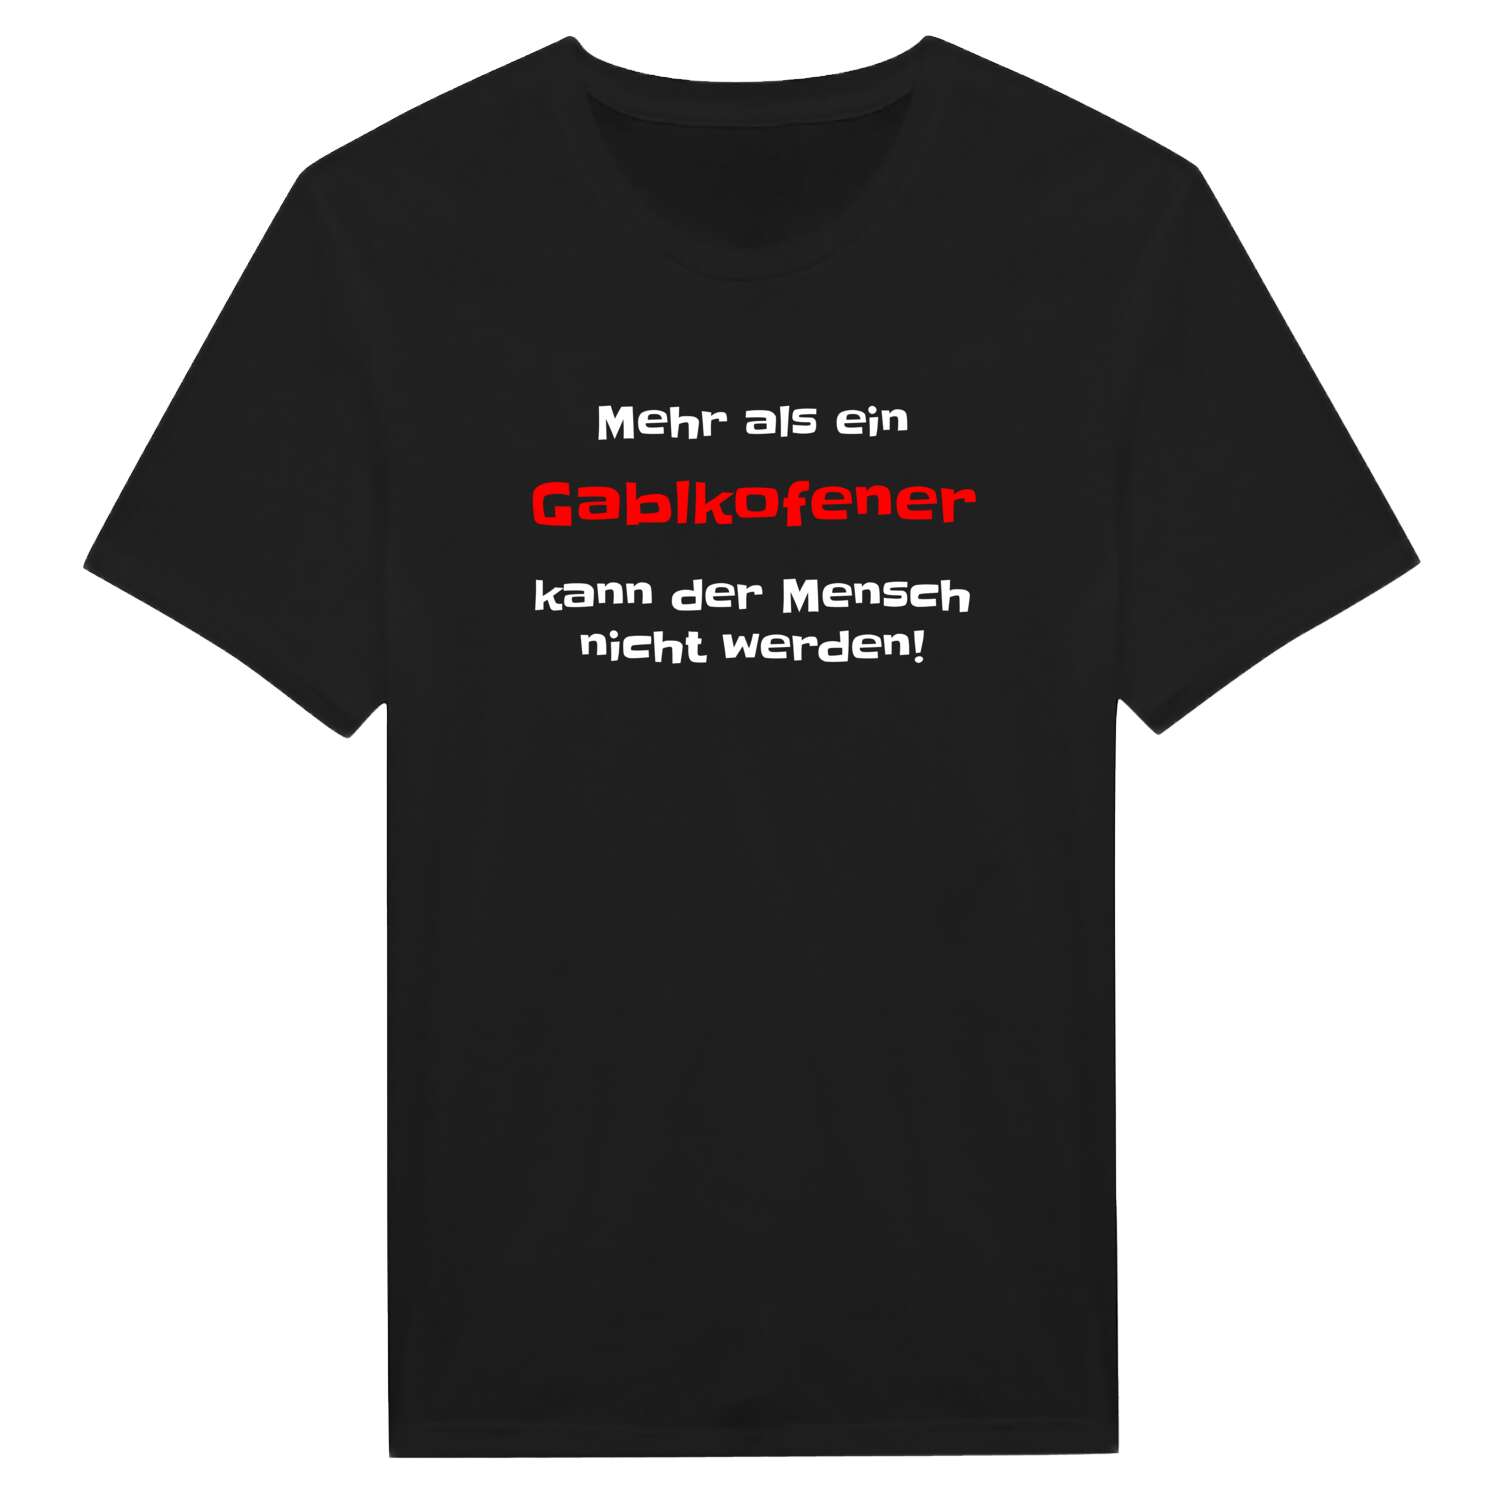 Gablkofen T-Shirt »Mehr als ein«